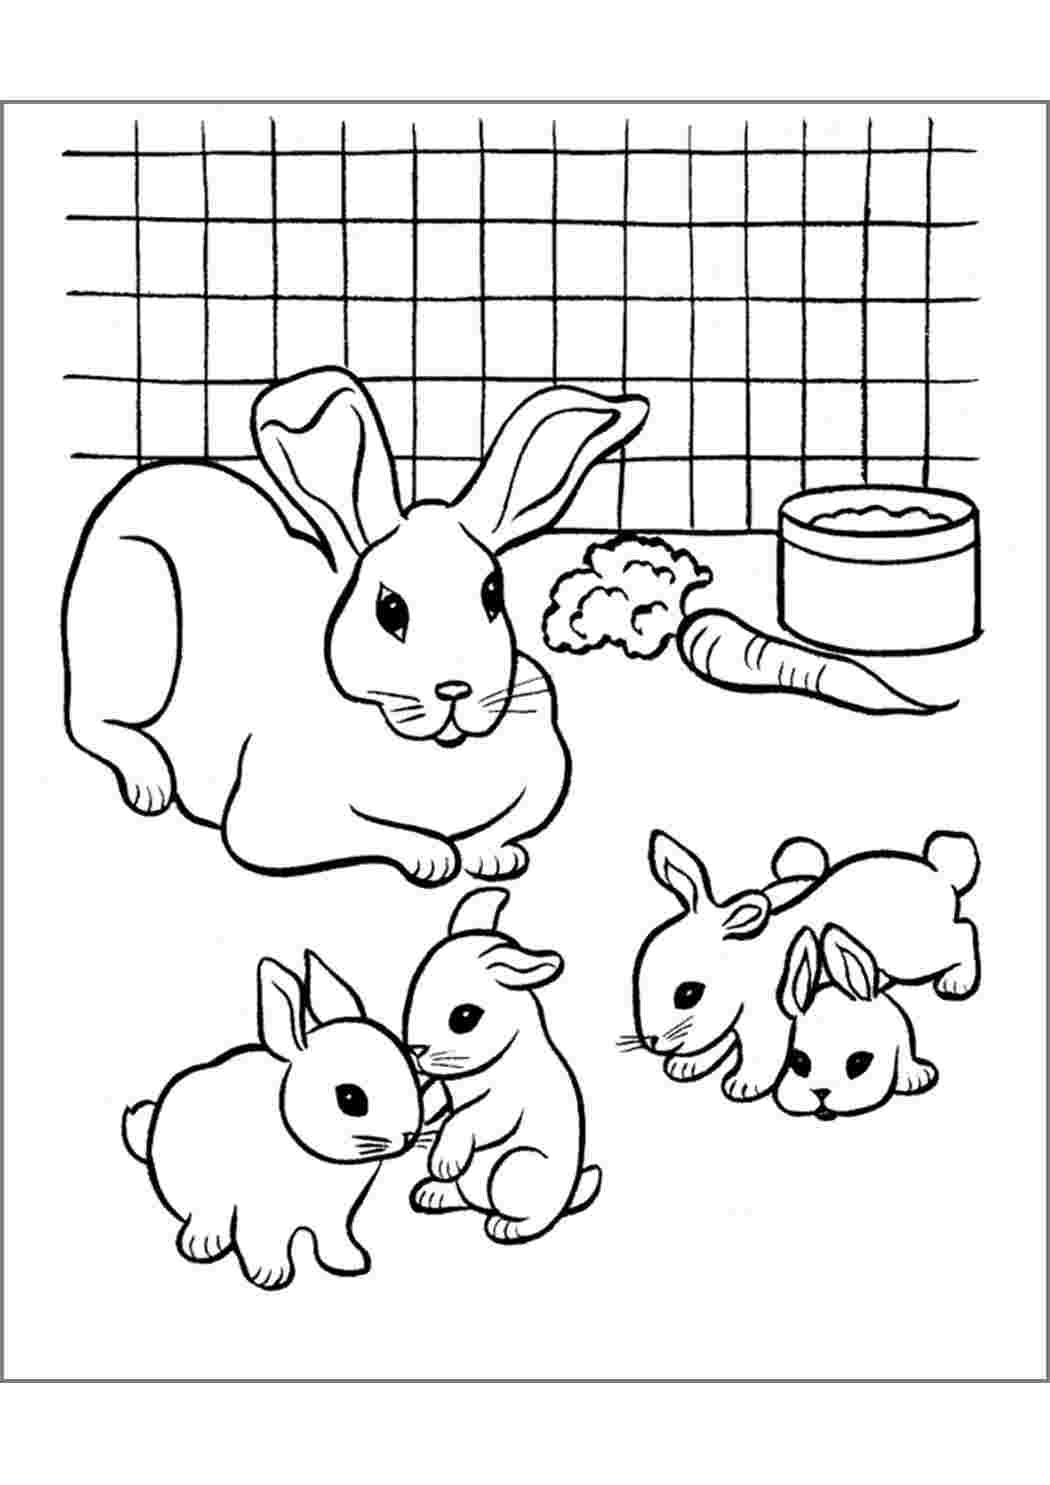 Раскраска кролик Изображения – скачать бесплатно на Freepik